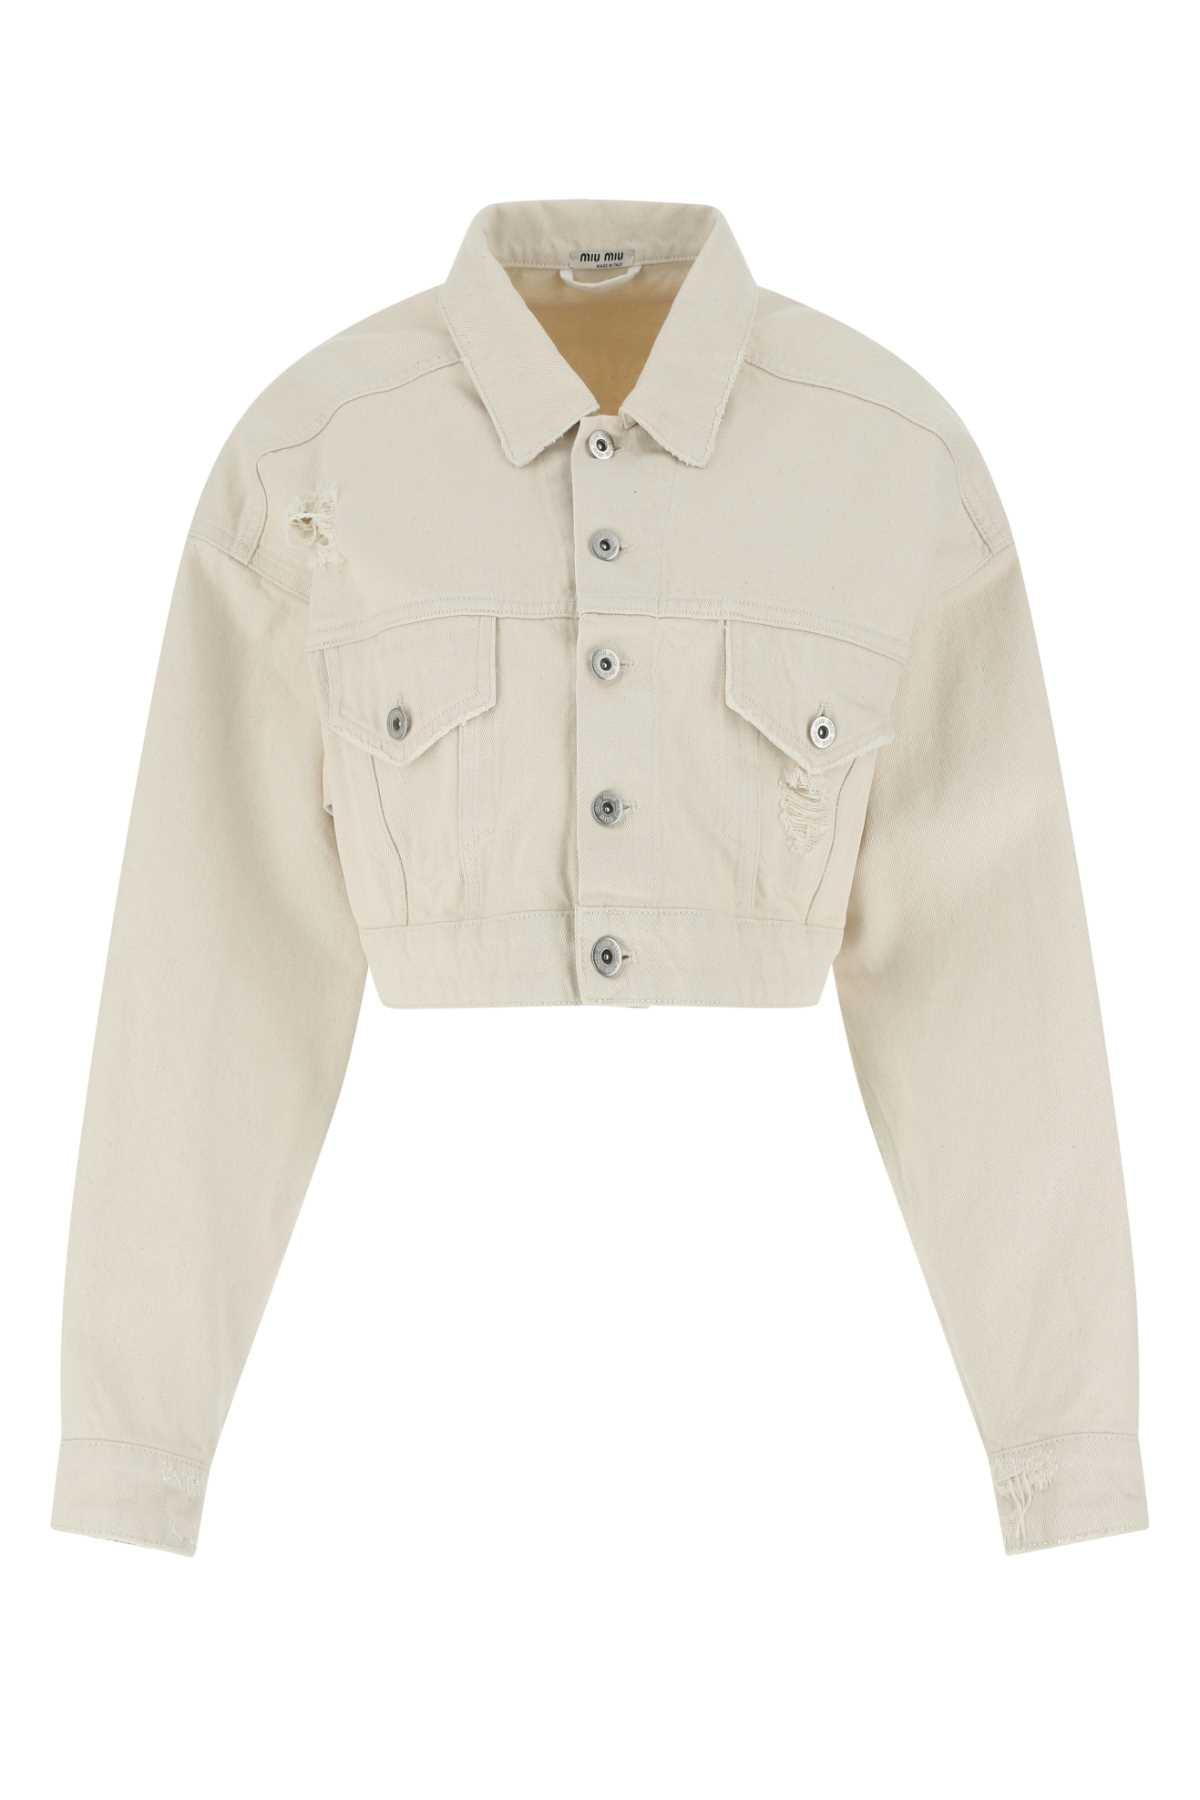 Miu Miu Distressed Cropped Denim Jacket in White | Lyst